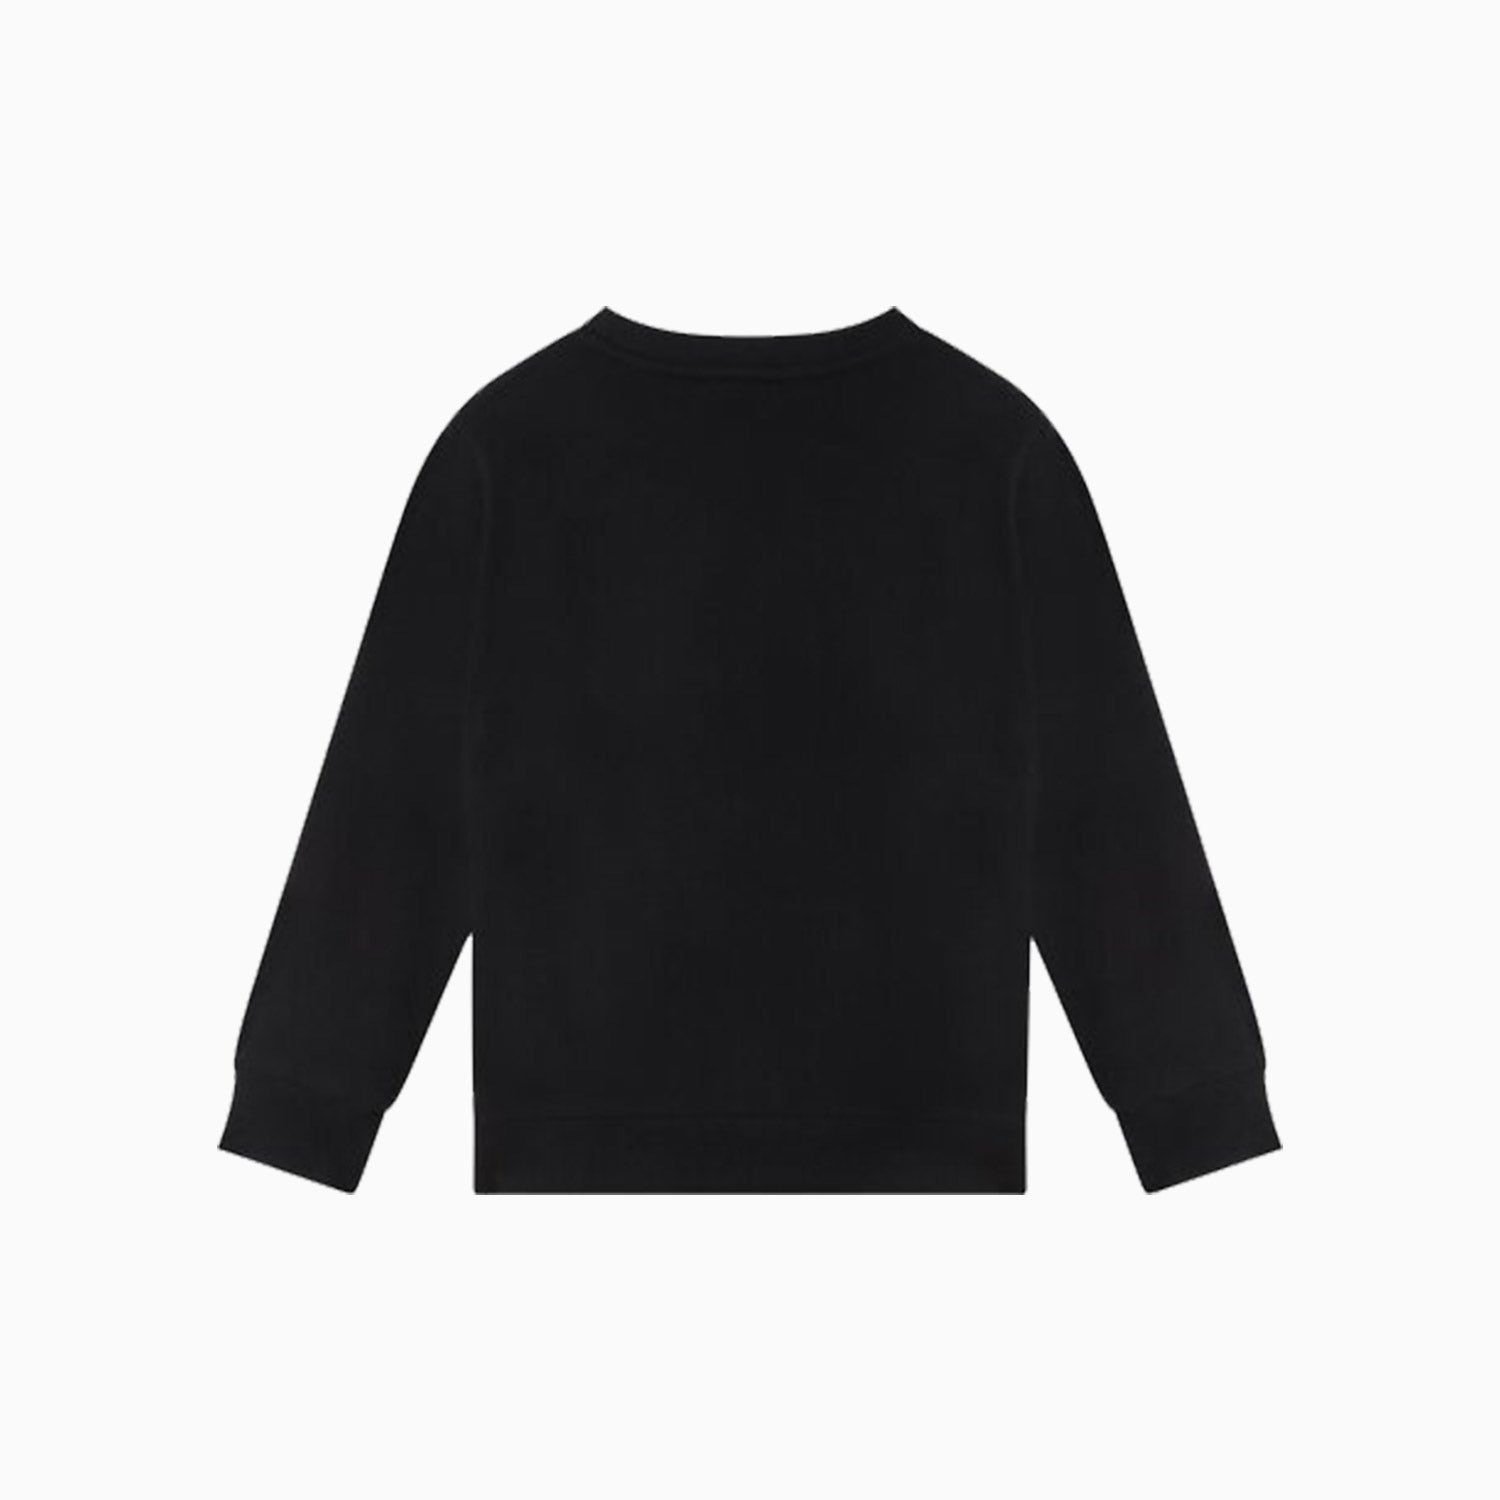 Kenzo Kid's Tiger Long Sleeves Sweatshirt - Color: Black - Kids Premium Clothing -